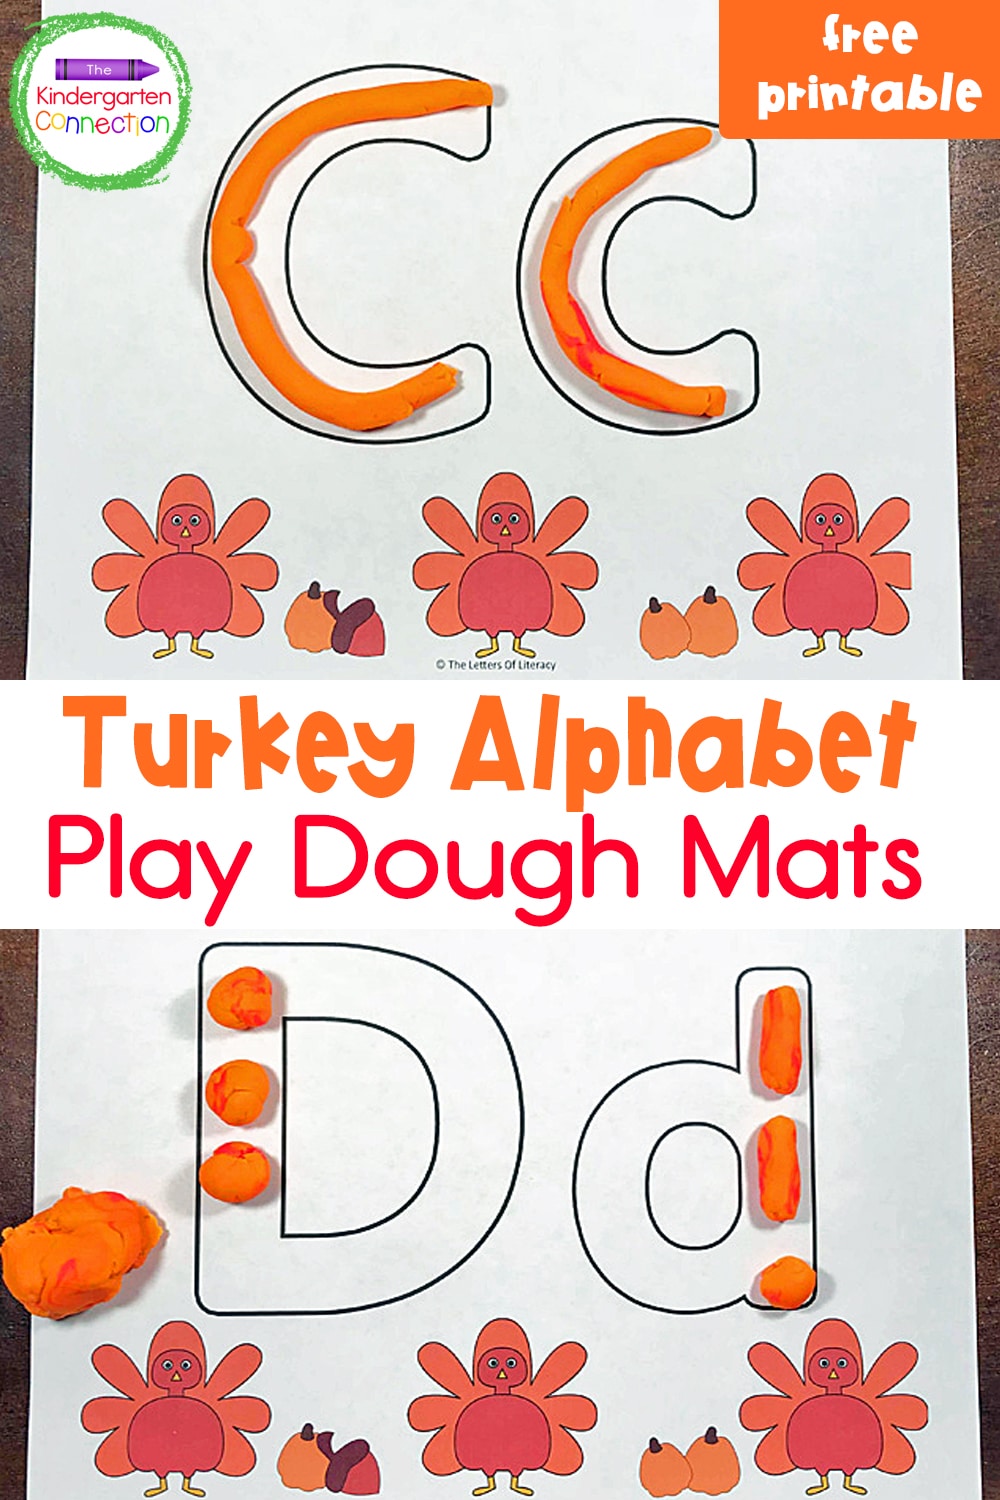 Turkey Full Alphabet Play Dough Mats For Strengthening Upper and Lowercase Letter Skills For Kindergarten